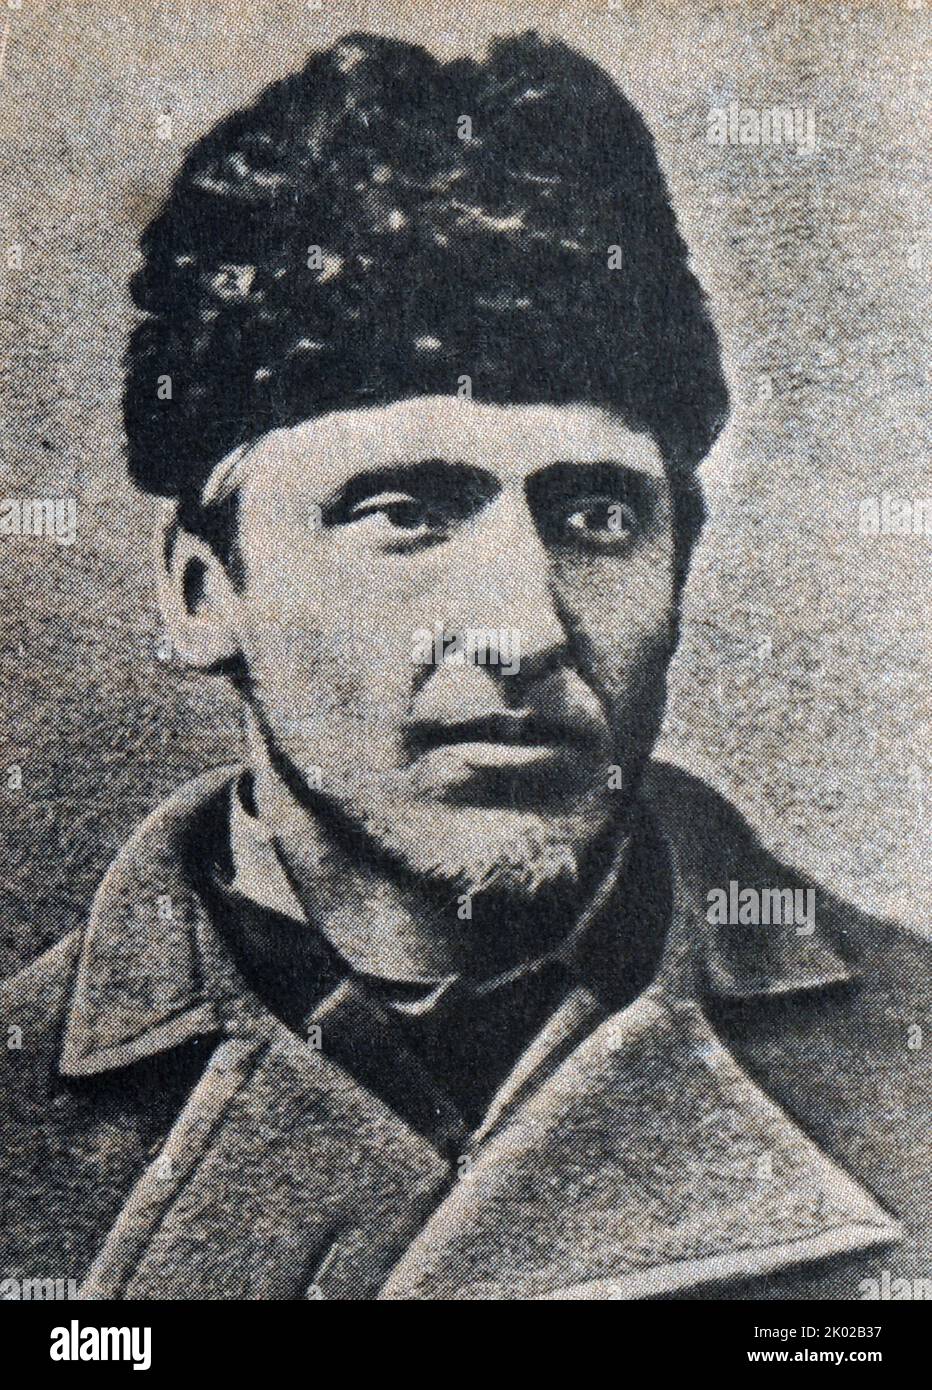 Ludwig Varynsky (1856-1889). Révolutionnaire polonais, fondateur du parti prolétariat. Arrêté en 1883 et condamné à la prison à vie. Il est mort à la prison de Shlisselburg. Banque D'Images